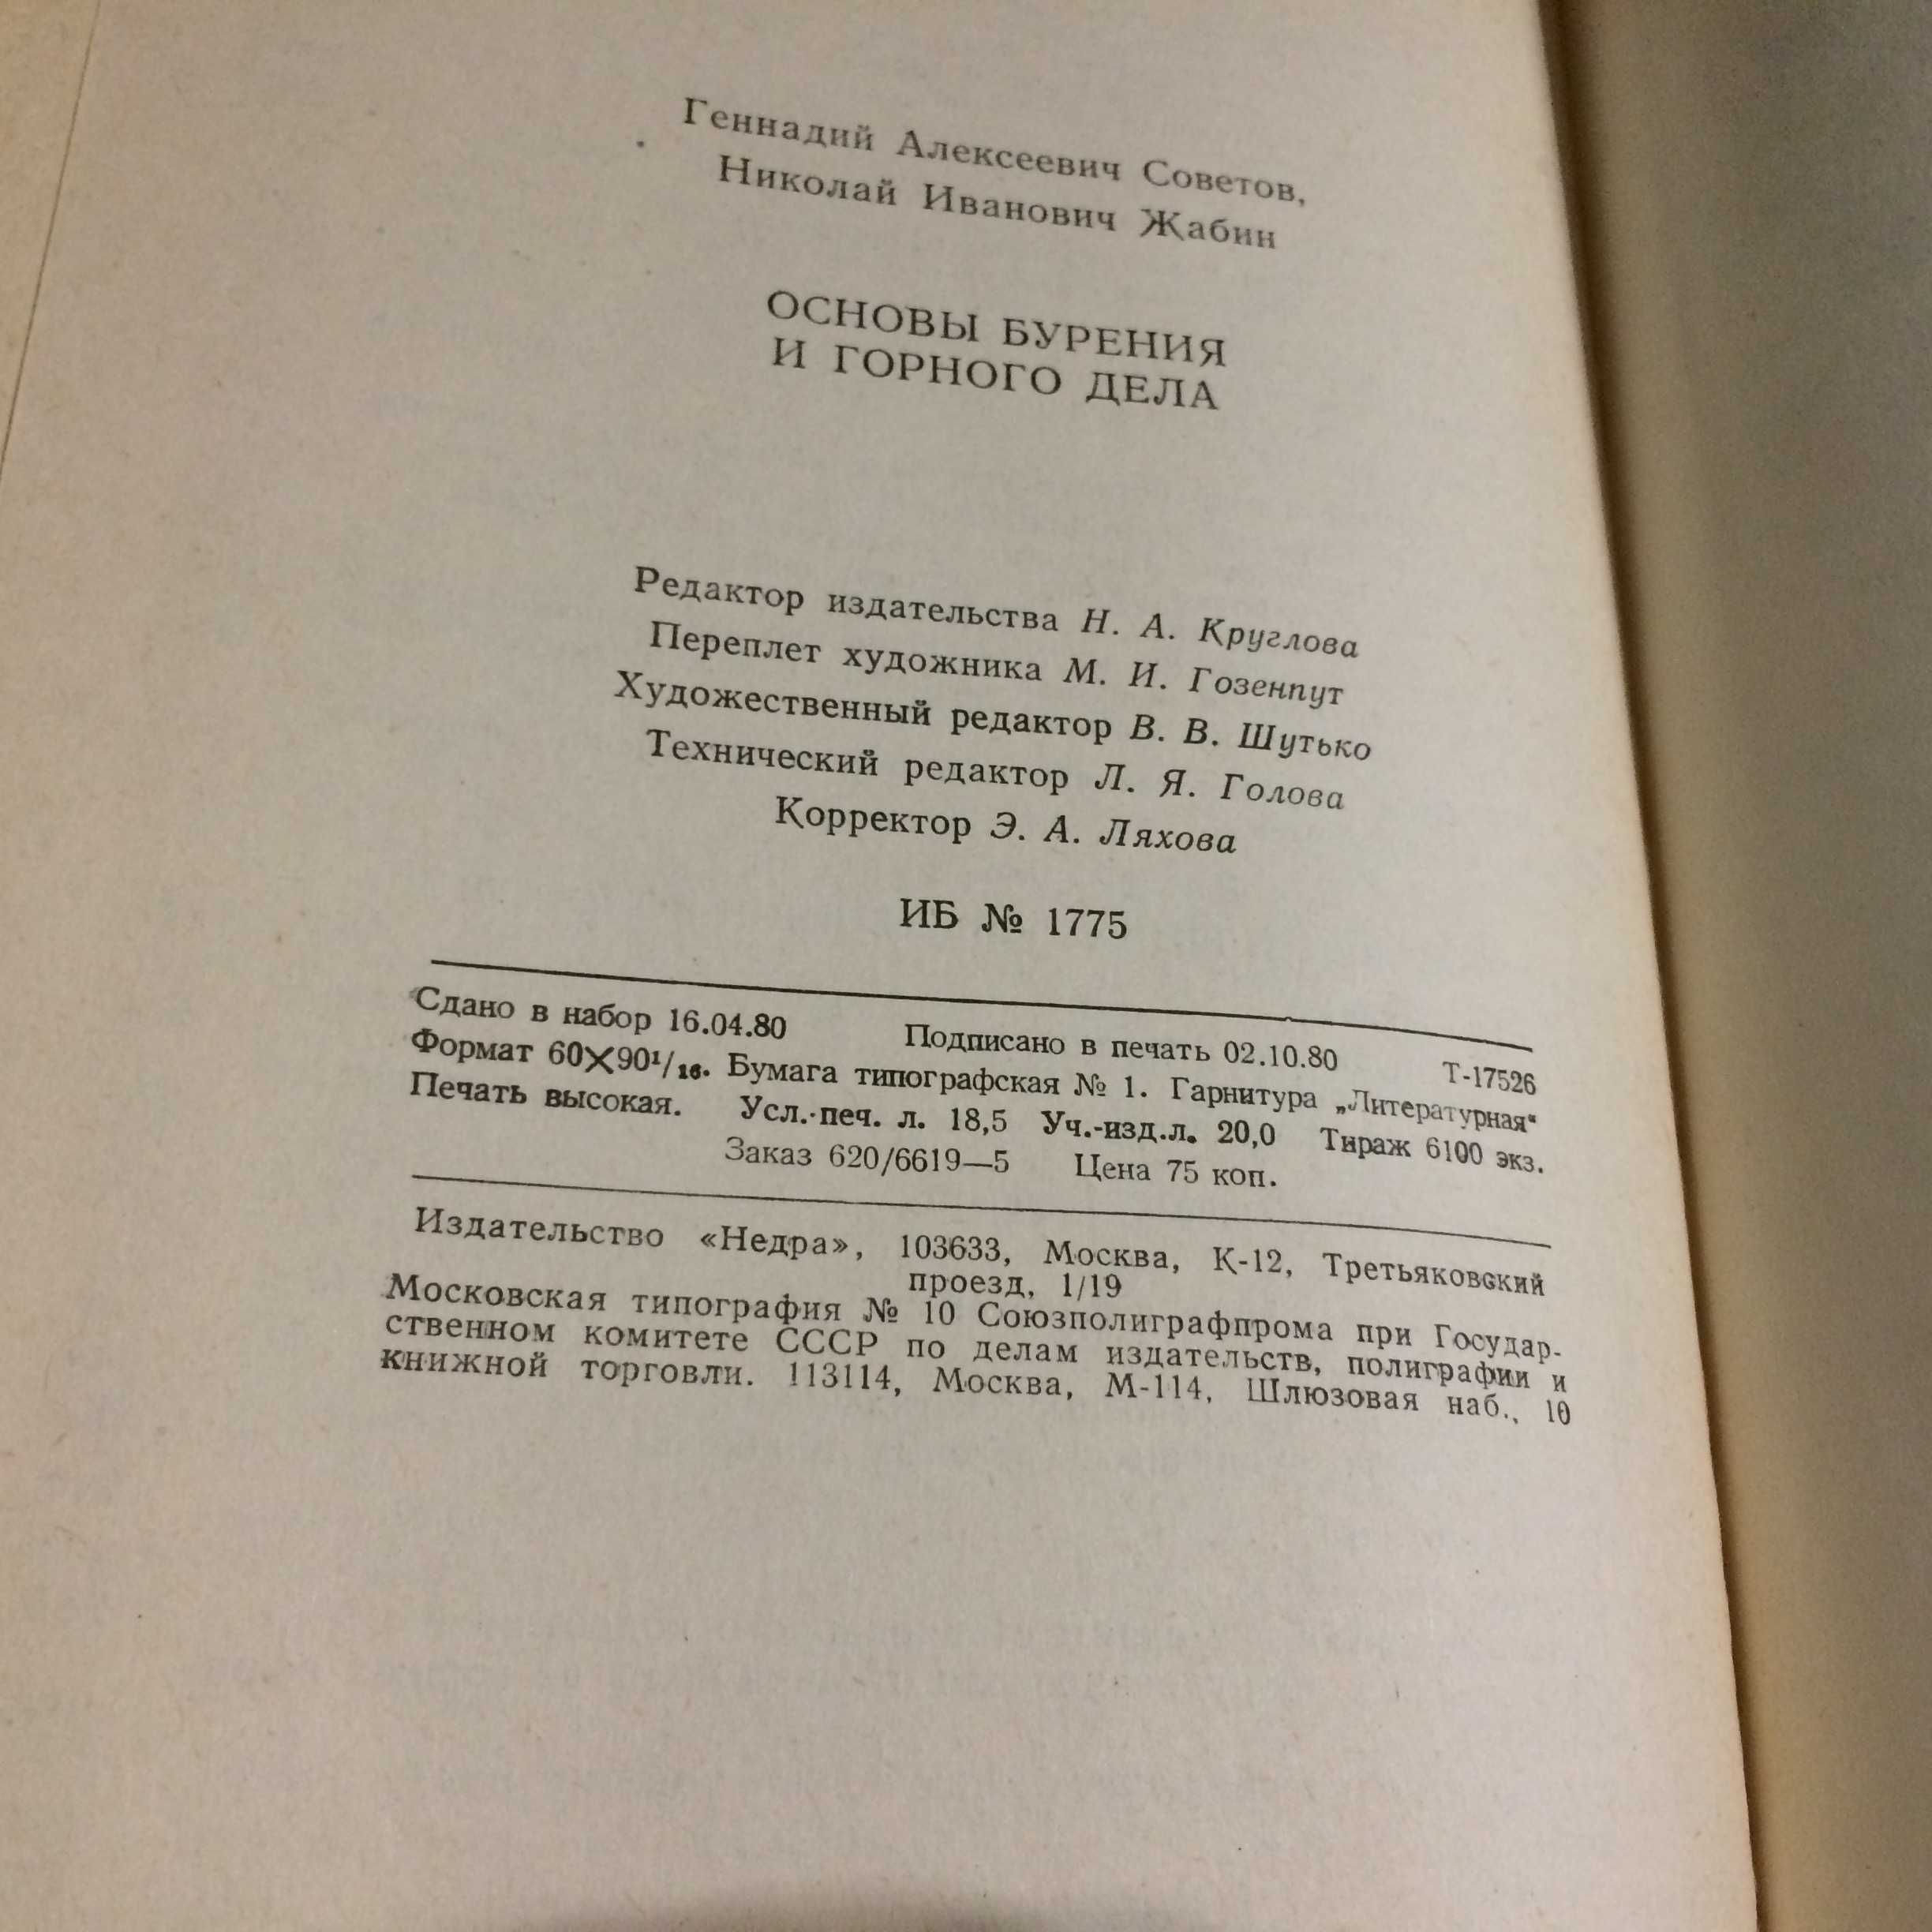 Основы бурения и горного дела Жабин Советов 1980 Недра